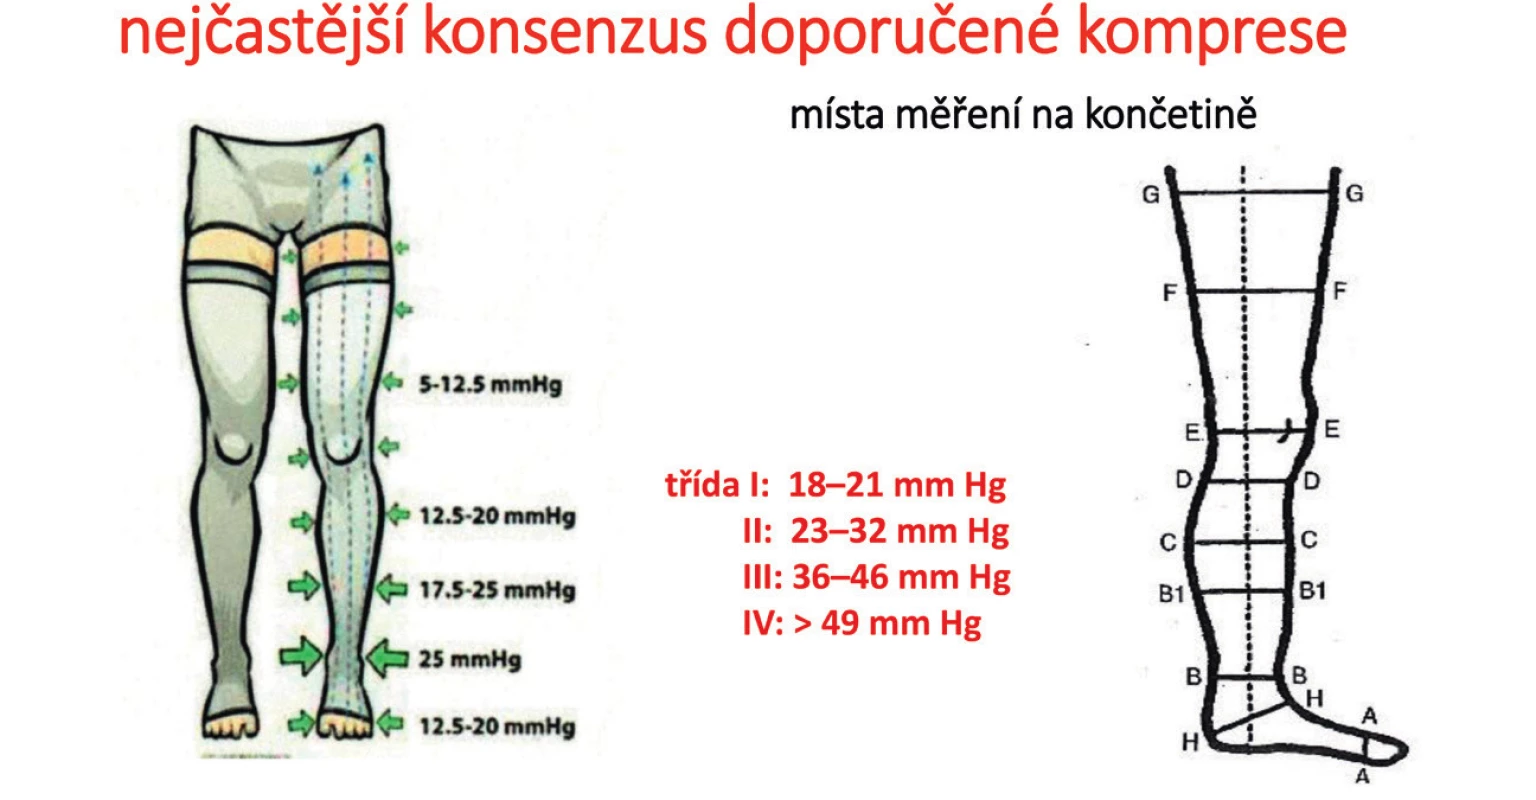 Kompresní tlaky dle standardu NSR (8) a místa měření obvodů na končetině
